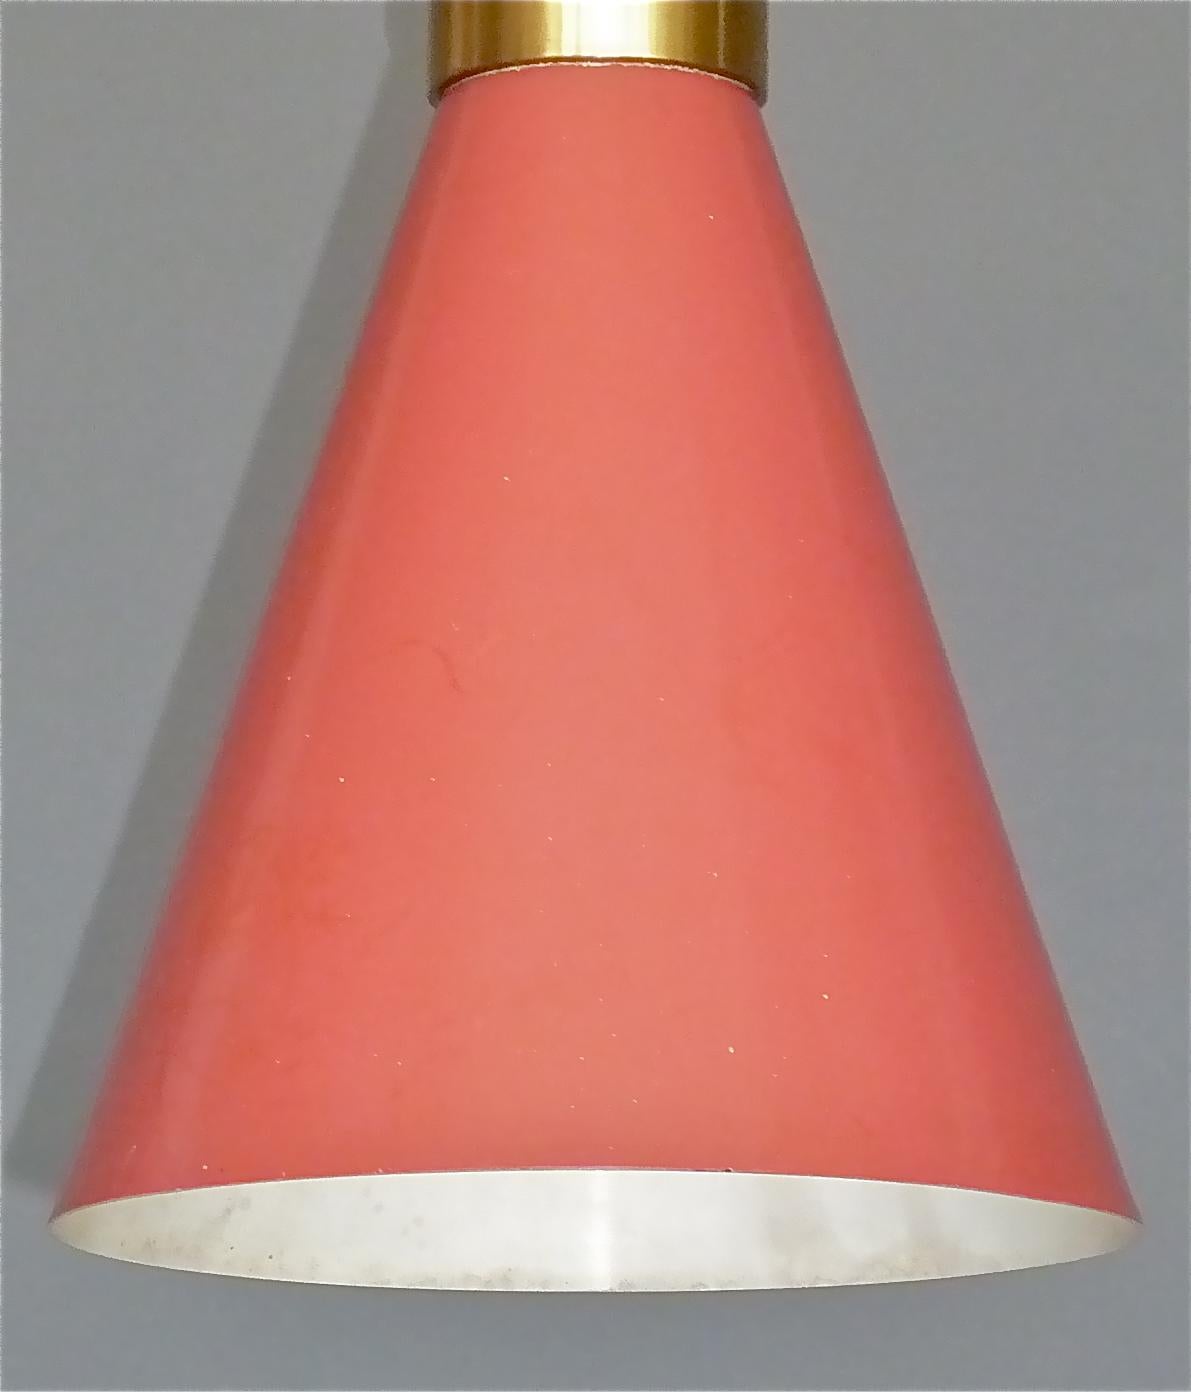 Aluminum Midcentury Carl Moor BAG Turgi Pendant Lamp Diabolo Red Stilnovo Style 1950s For Sale